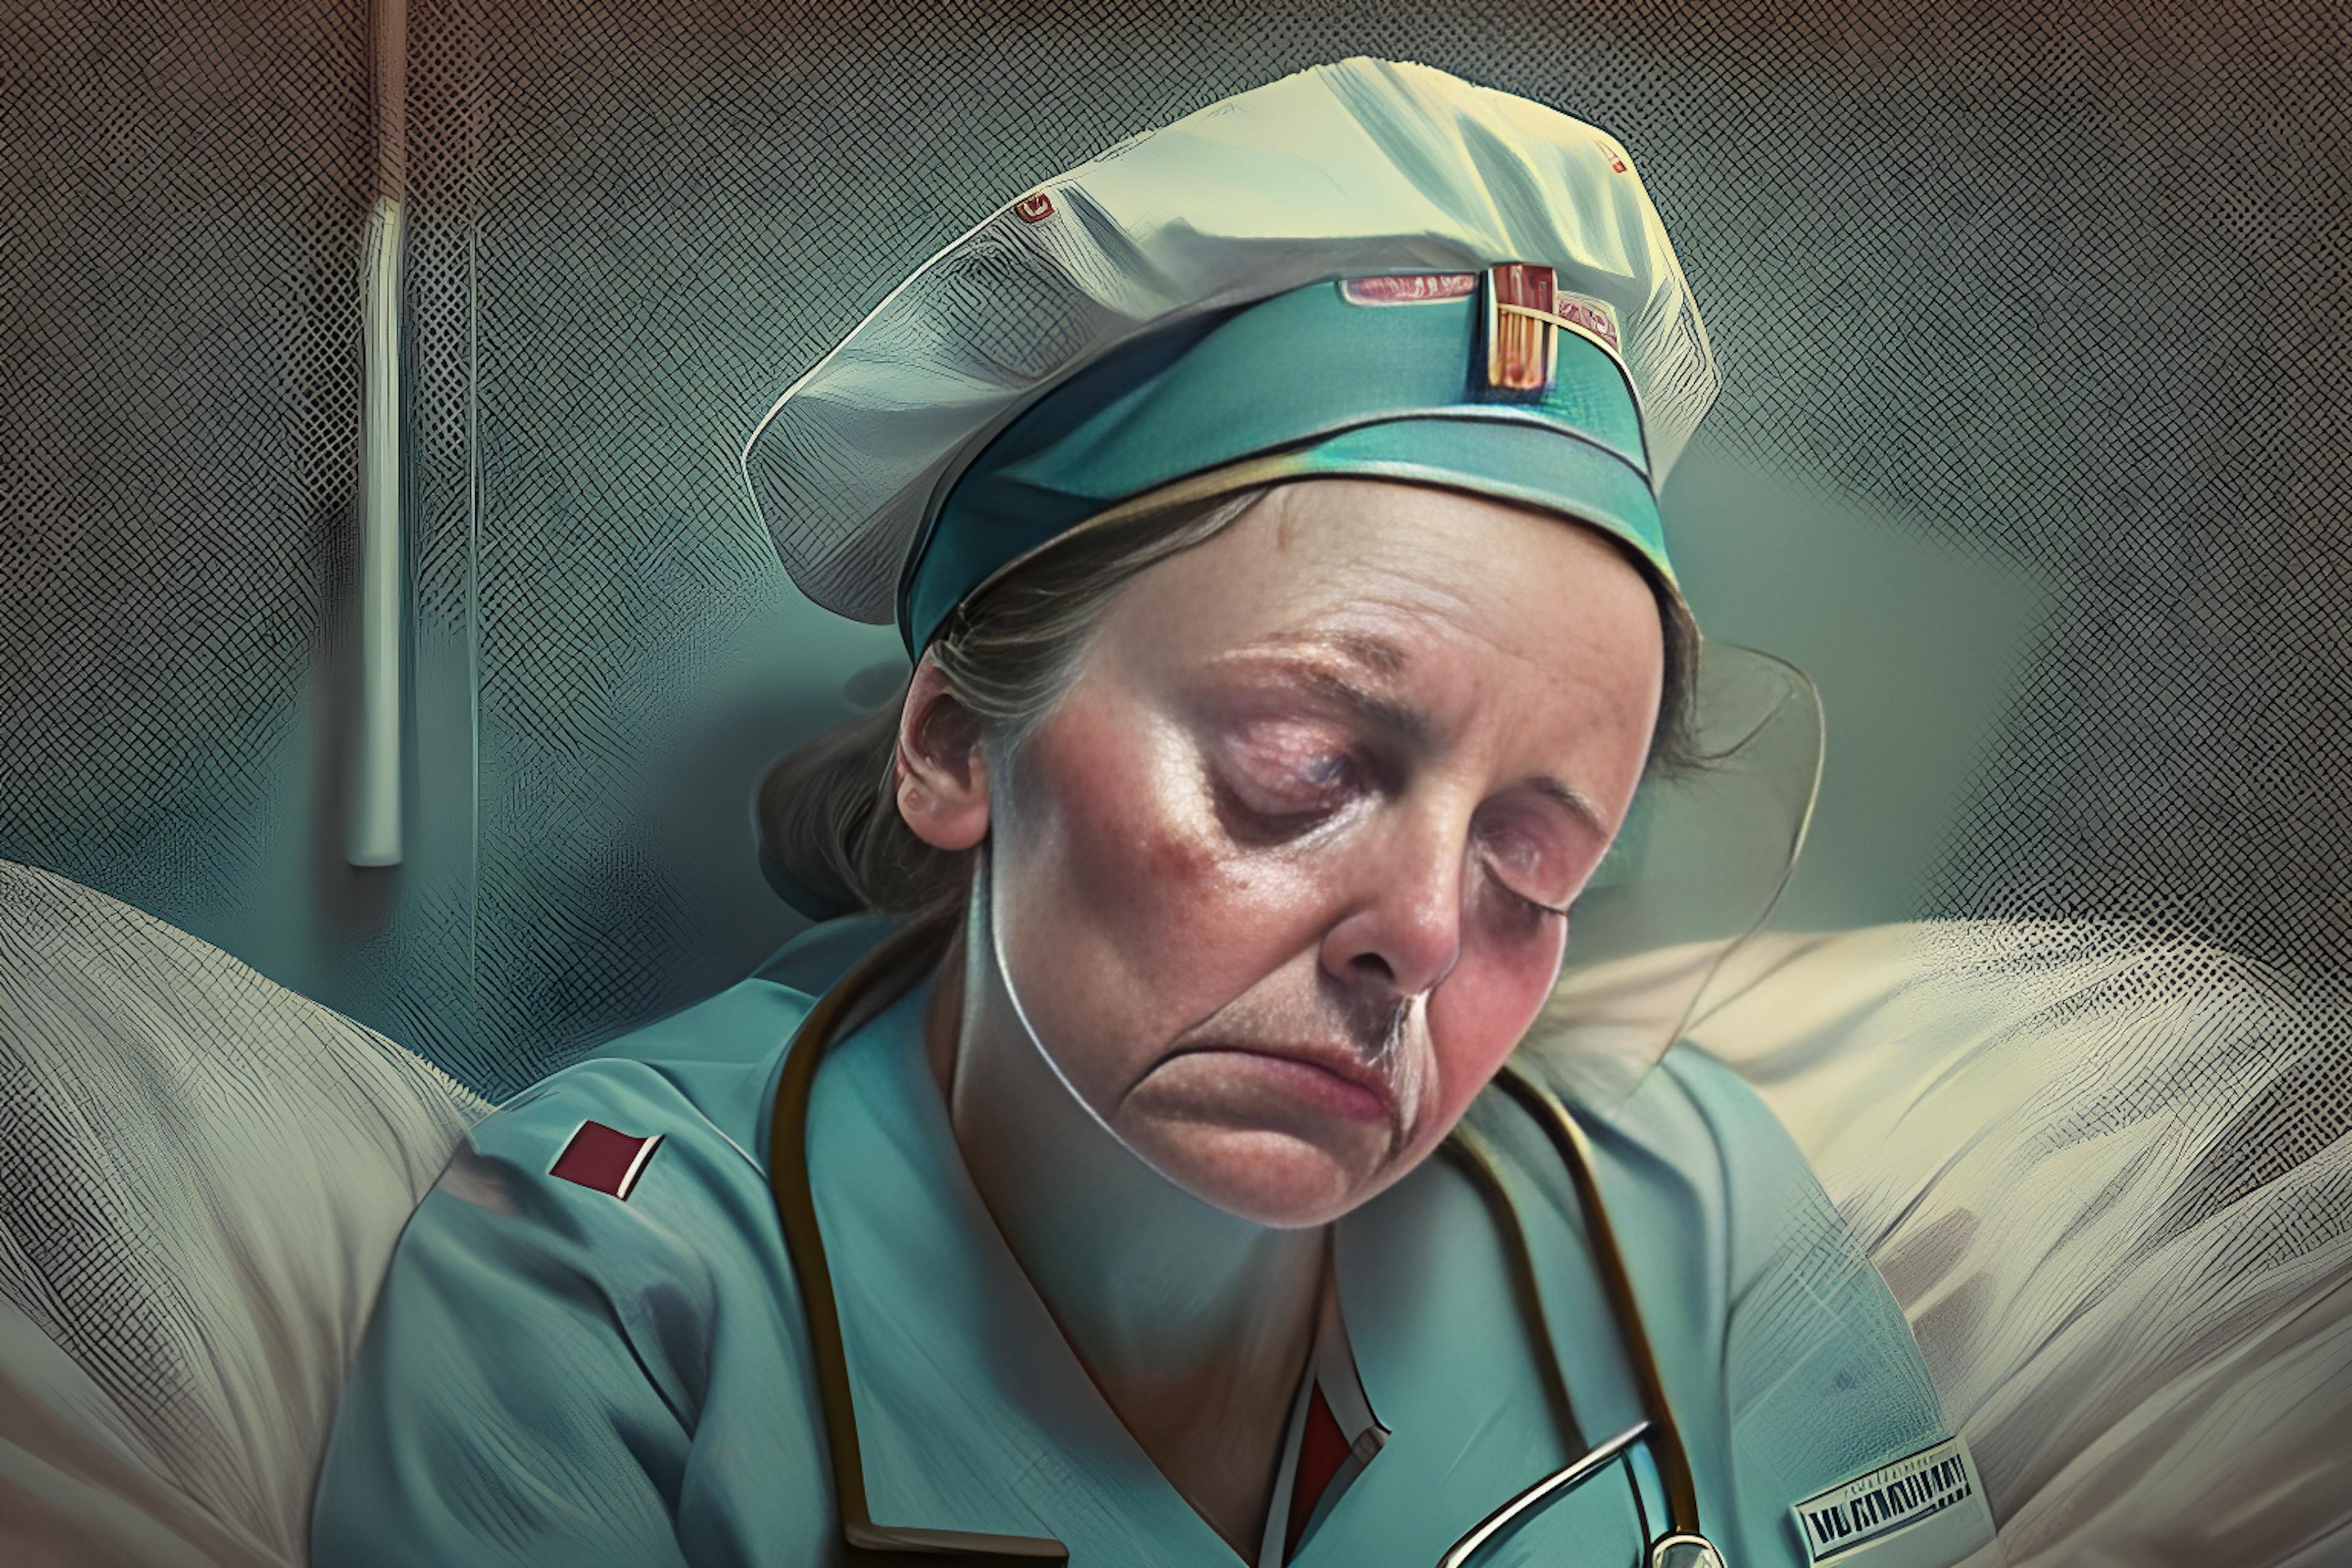 Hình ảnh này được tạo bởi Trình tạo hình ảnh AI của HackerNoon thông qua lời nhắc "một y tá mệt mỏi".